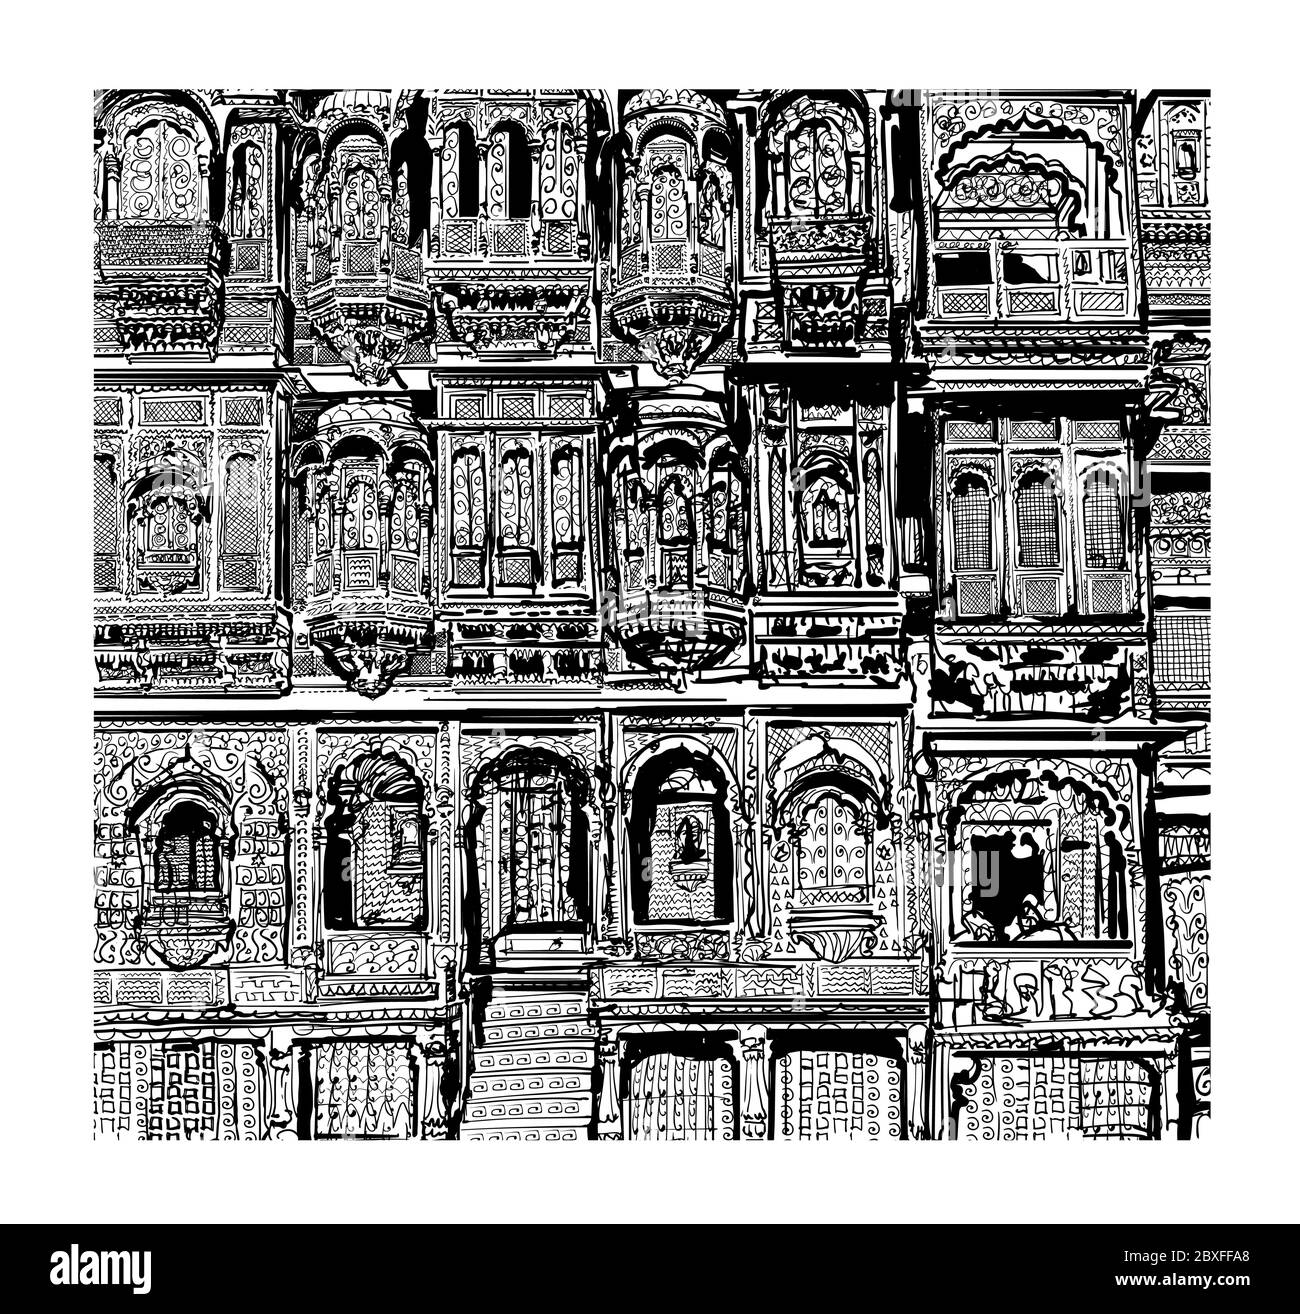 Facciata di vecchia casa con balconi a Jodhpur, India - illustrazione vettoriale (ideale per la stampa su tessuto o carta, poster o carta da parati, casa decorati Illustrazione Vettoriale